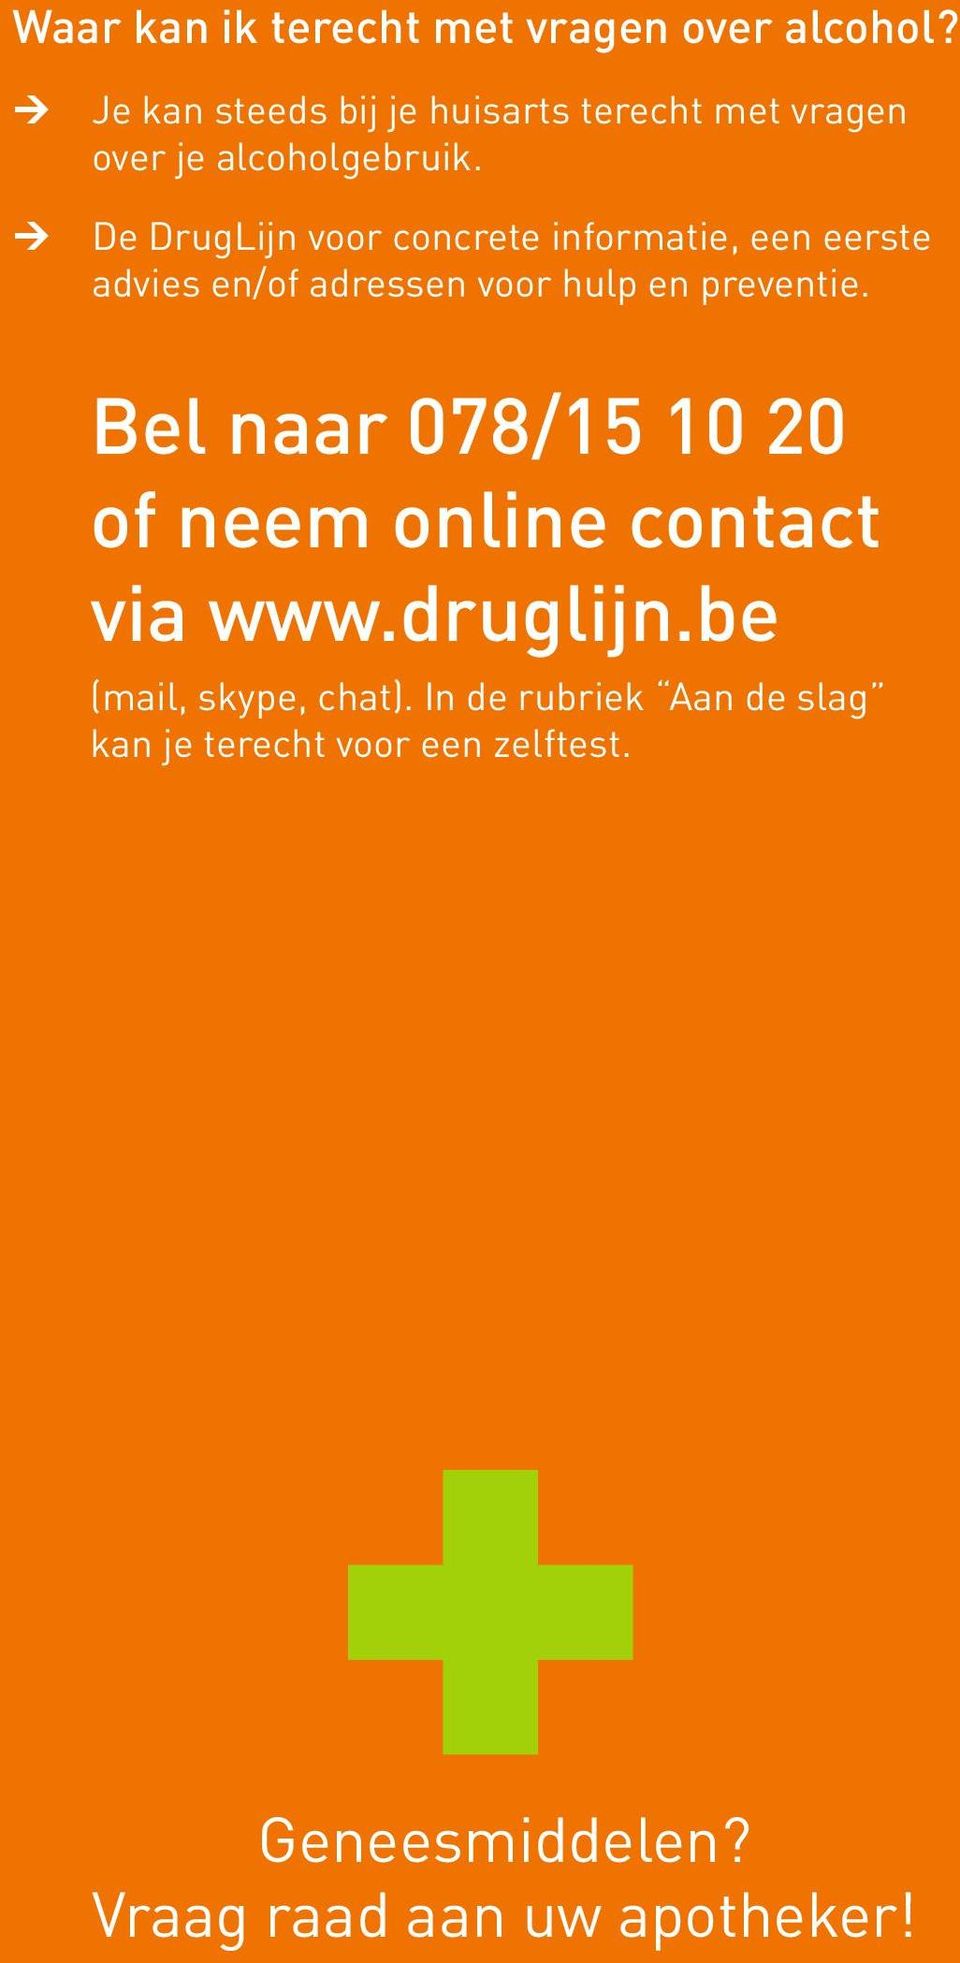 Ú De DrugLijn voor concrete formatie, een eerste advies en/of adressen voor hulp en preventie.